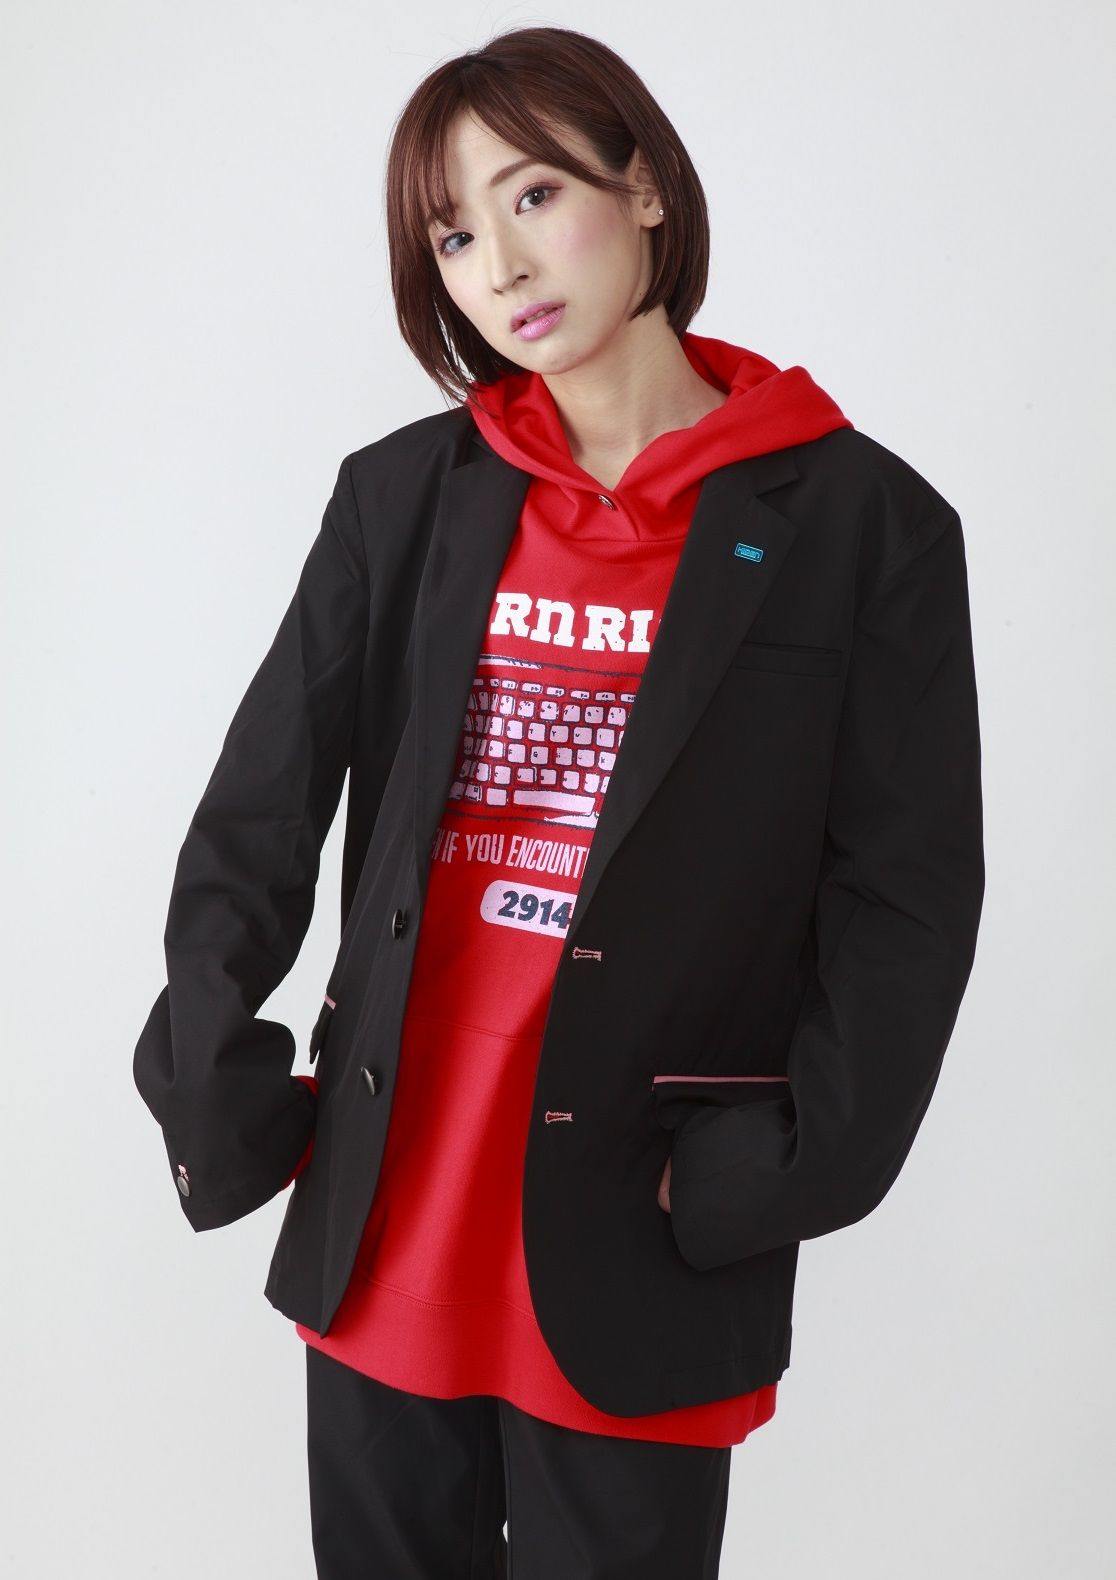 Aruto Hiden's Jacket—Kamen Rider Zero-One